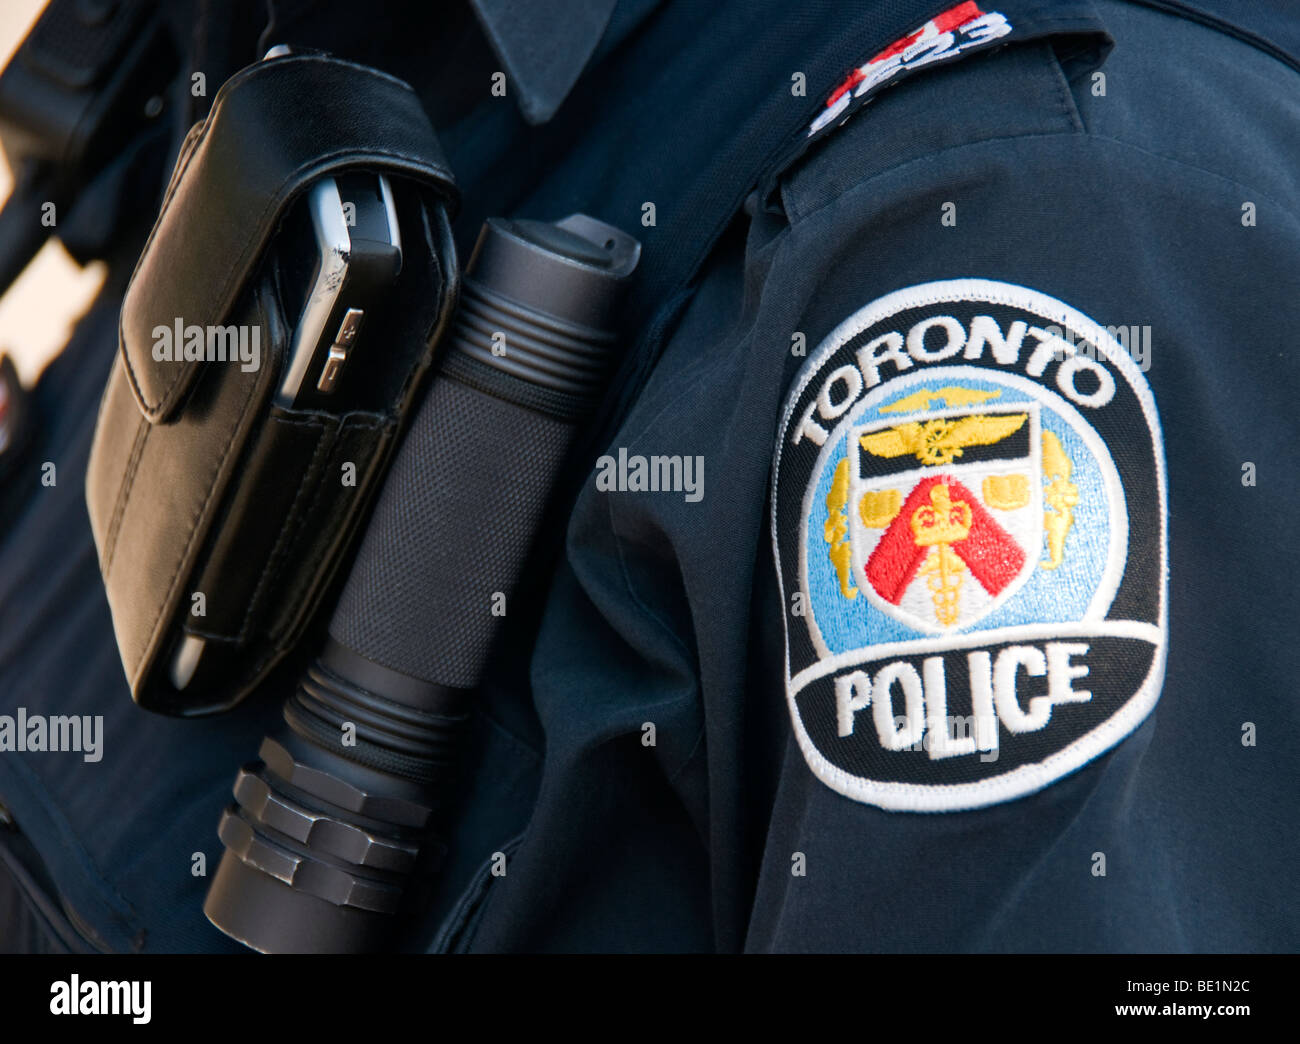 Cerca de Toronto Policías insignia, equipos y uniformes, Toronto, Canadá Foto de stock